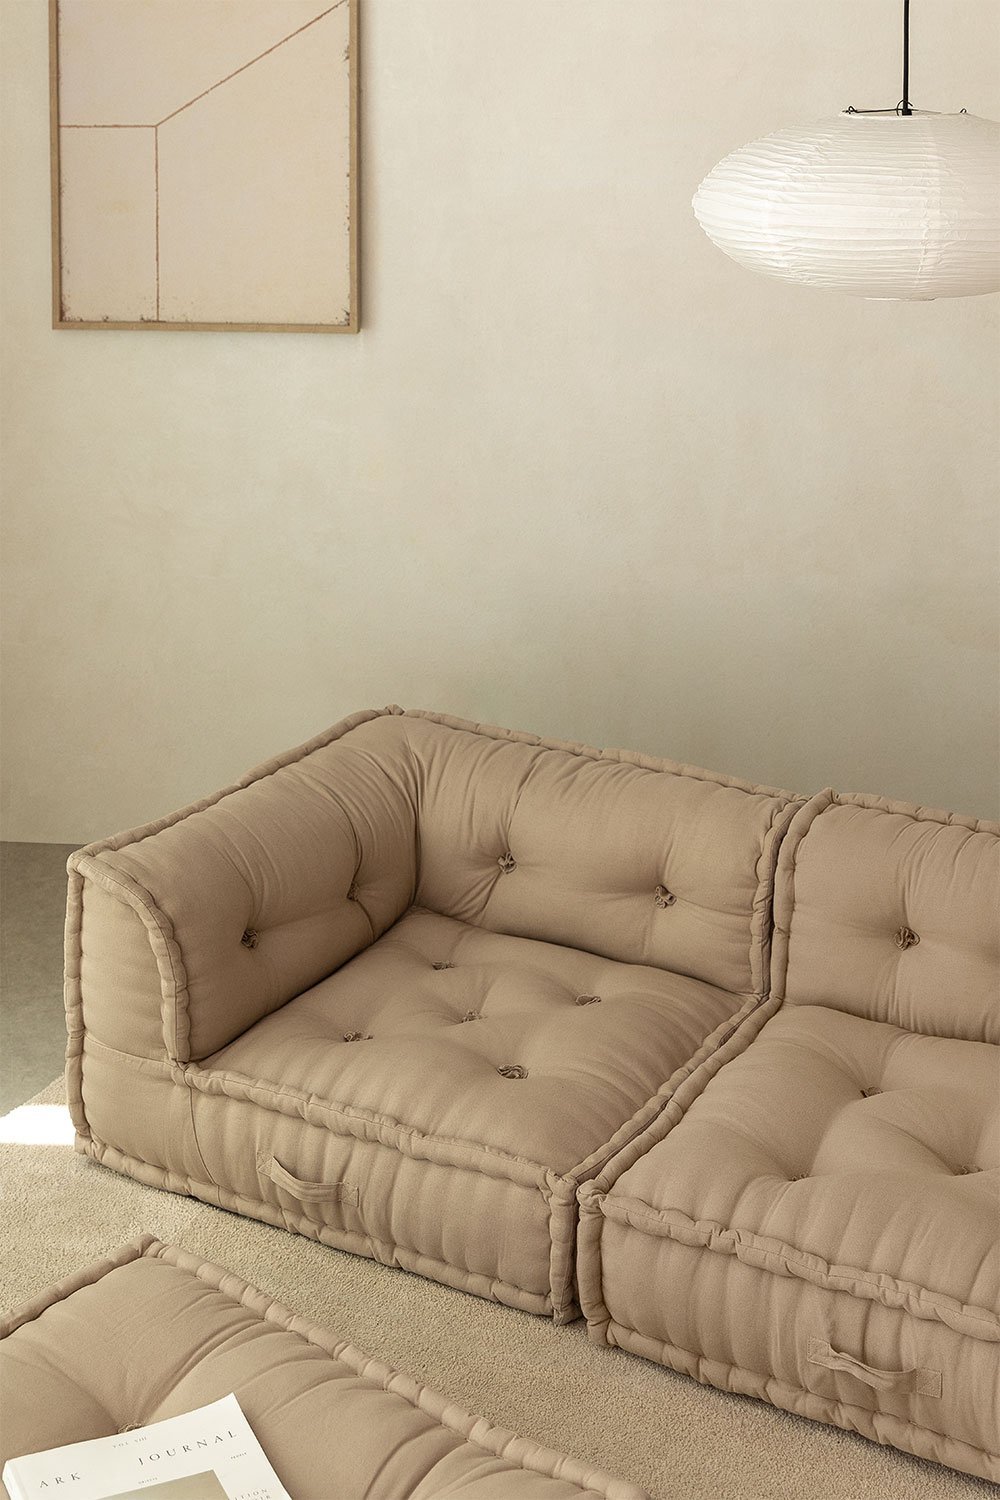 Narożna sofa modułowa z bawełny Dhel, obrazek w galerii 1